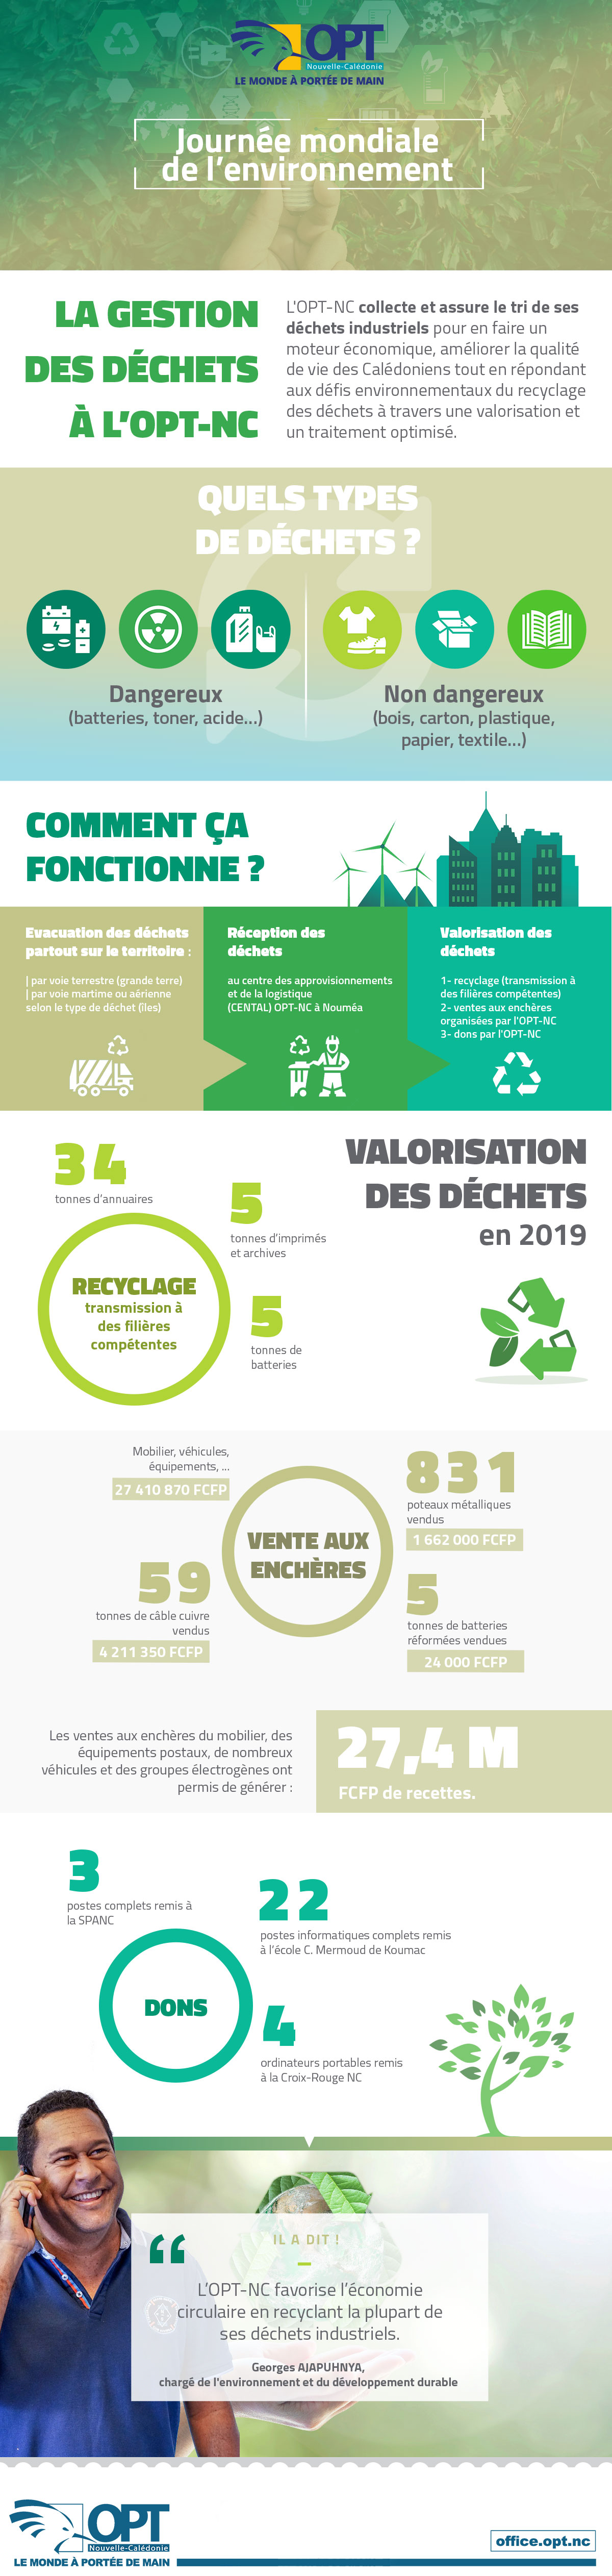 Infographie sur la gestion des déchets à l'OPT-NC